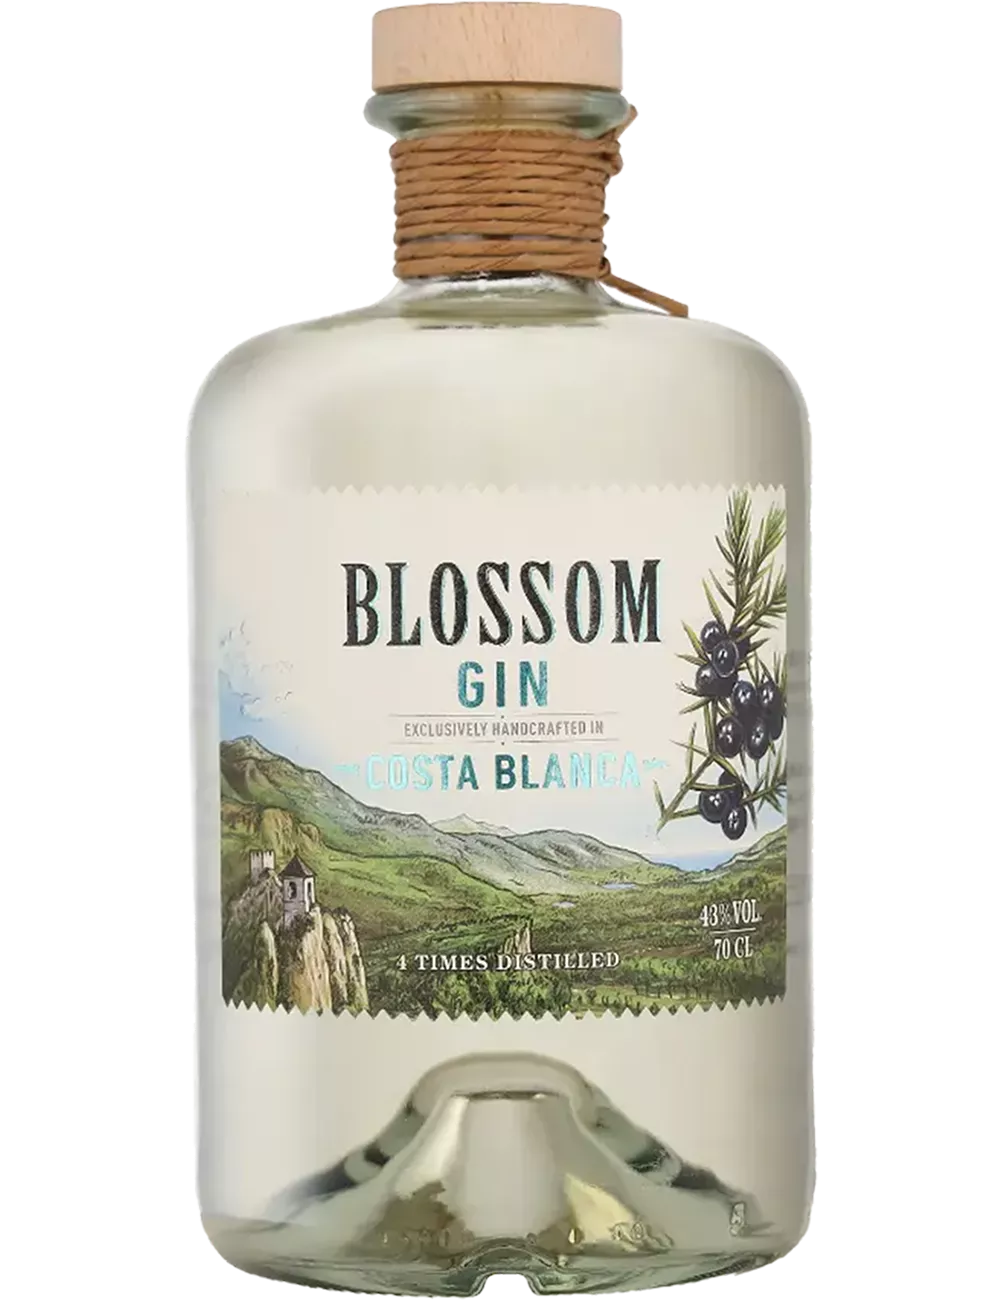 Blossom Costa Blanca - Distilled gin